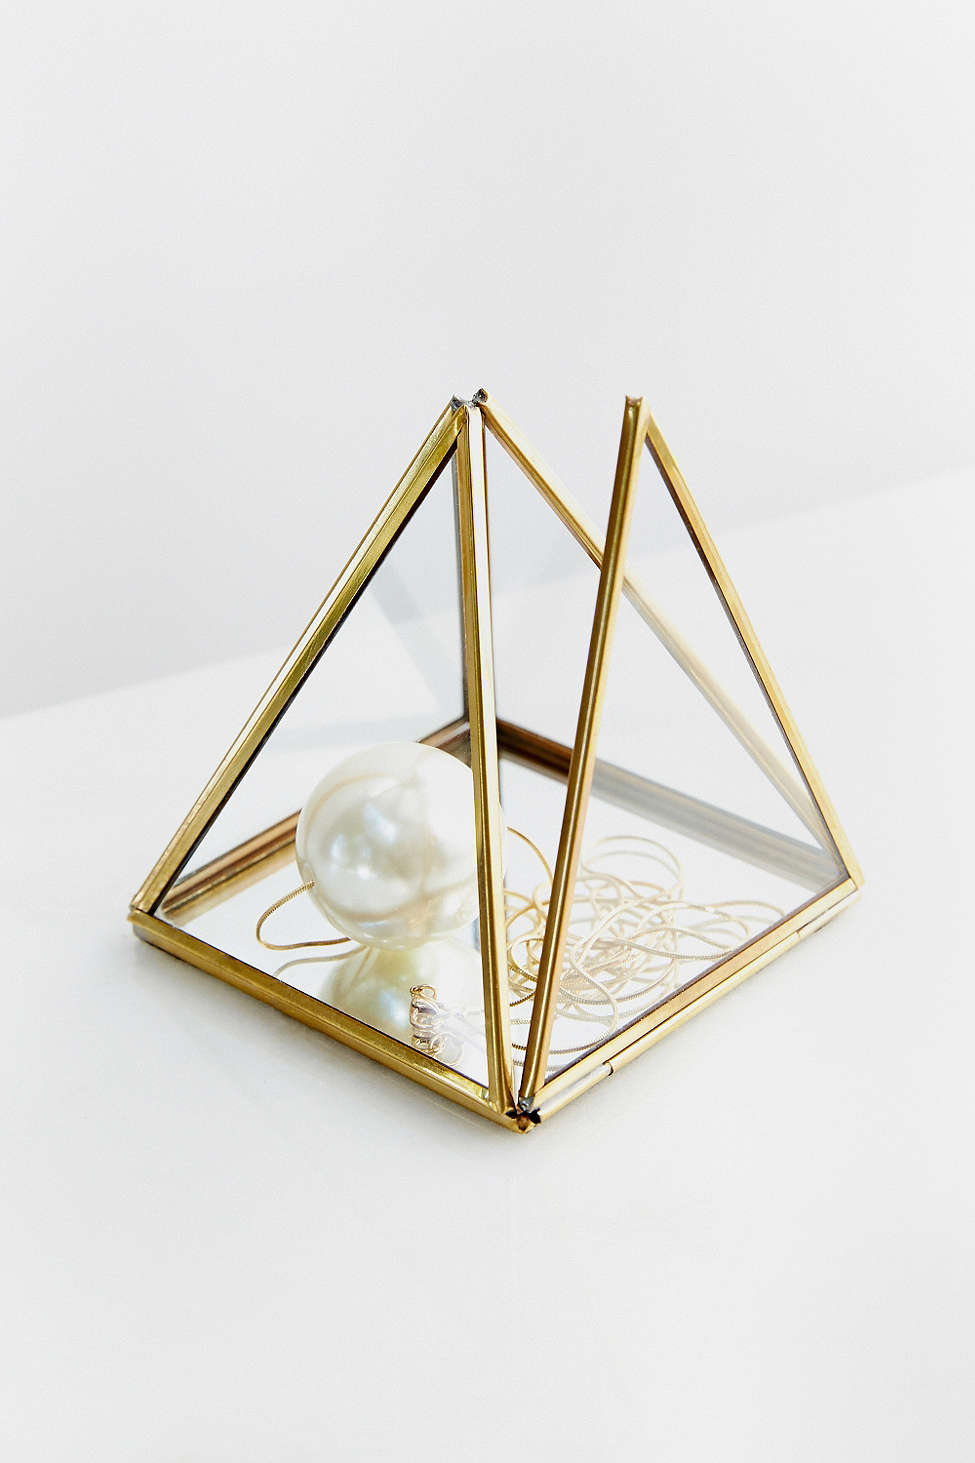 Steal It Saturday – Pyramid Mirror Box